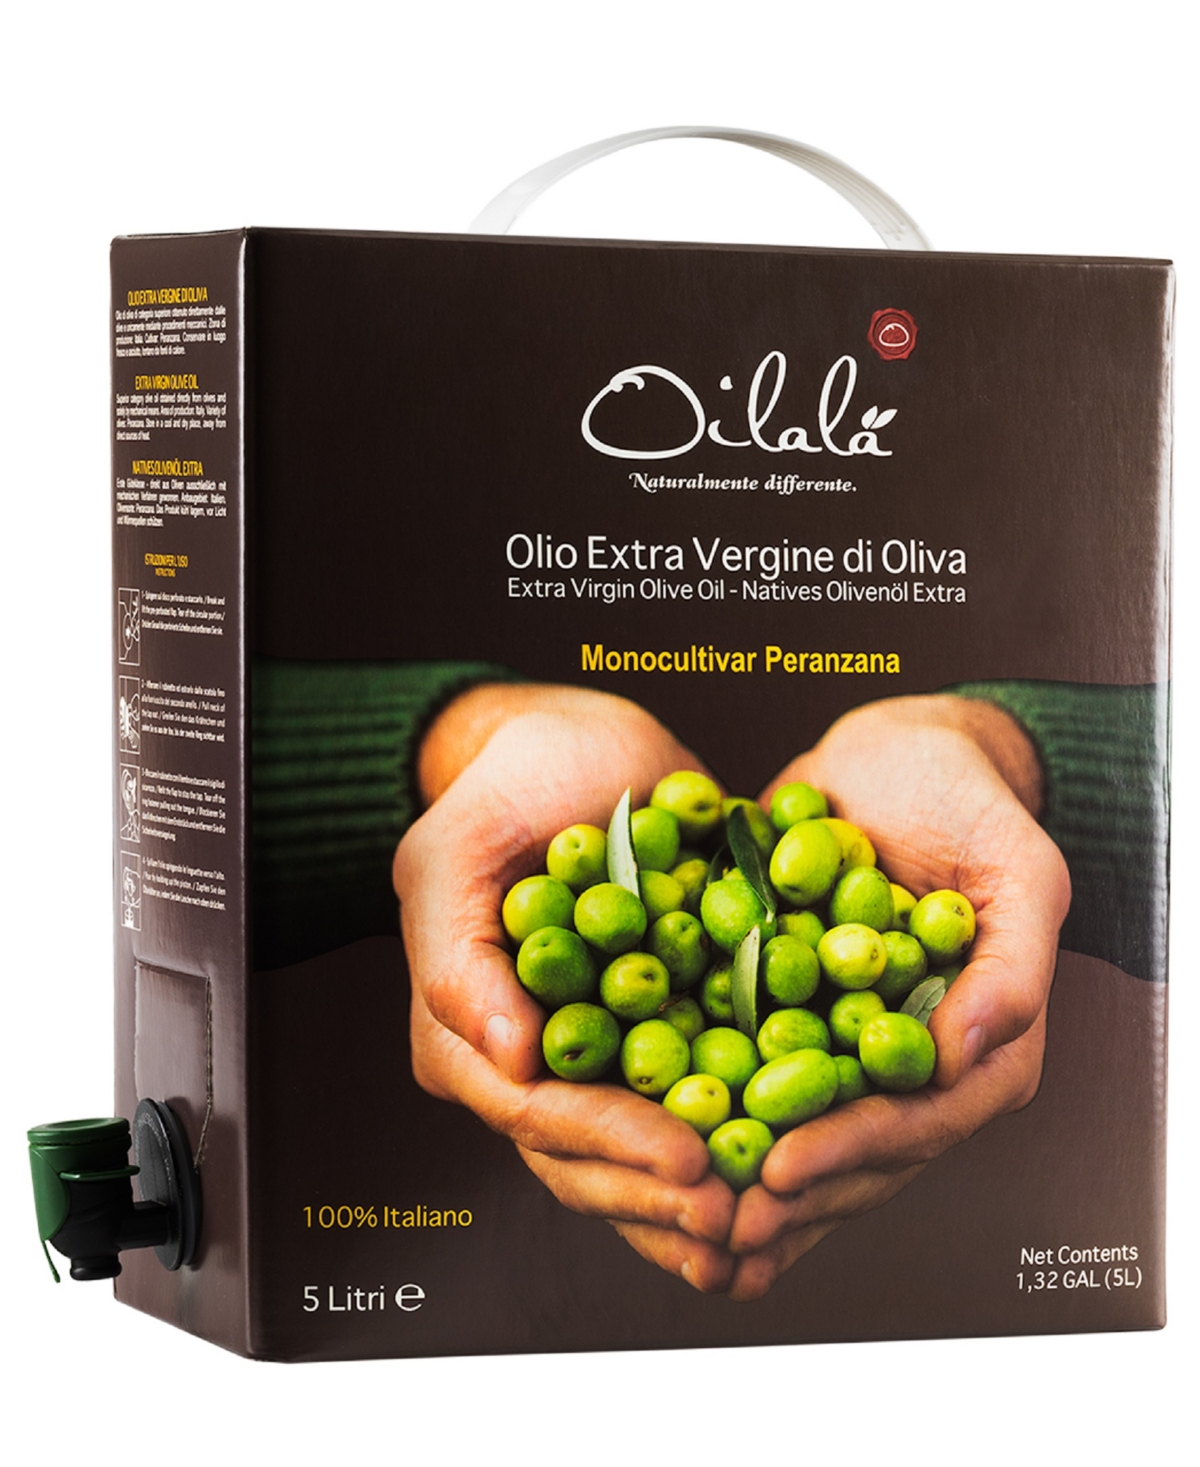 Oilala Delicate Italian Peranzana Extra Virgin Olive Oil Bottle, 5 Liter Bag In Box In Neutral